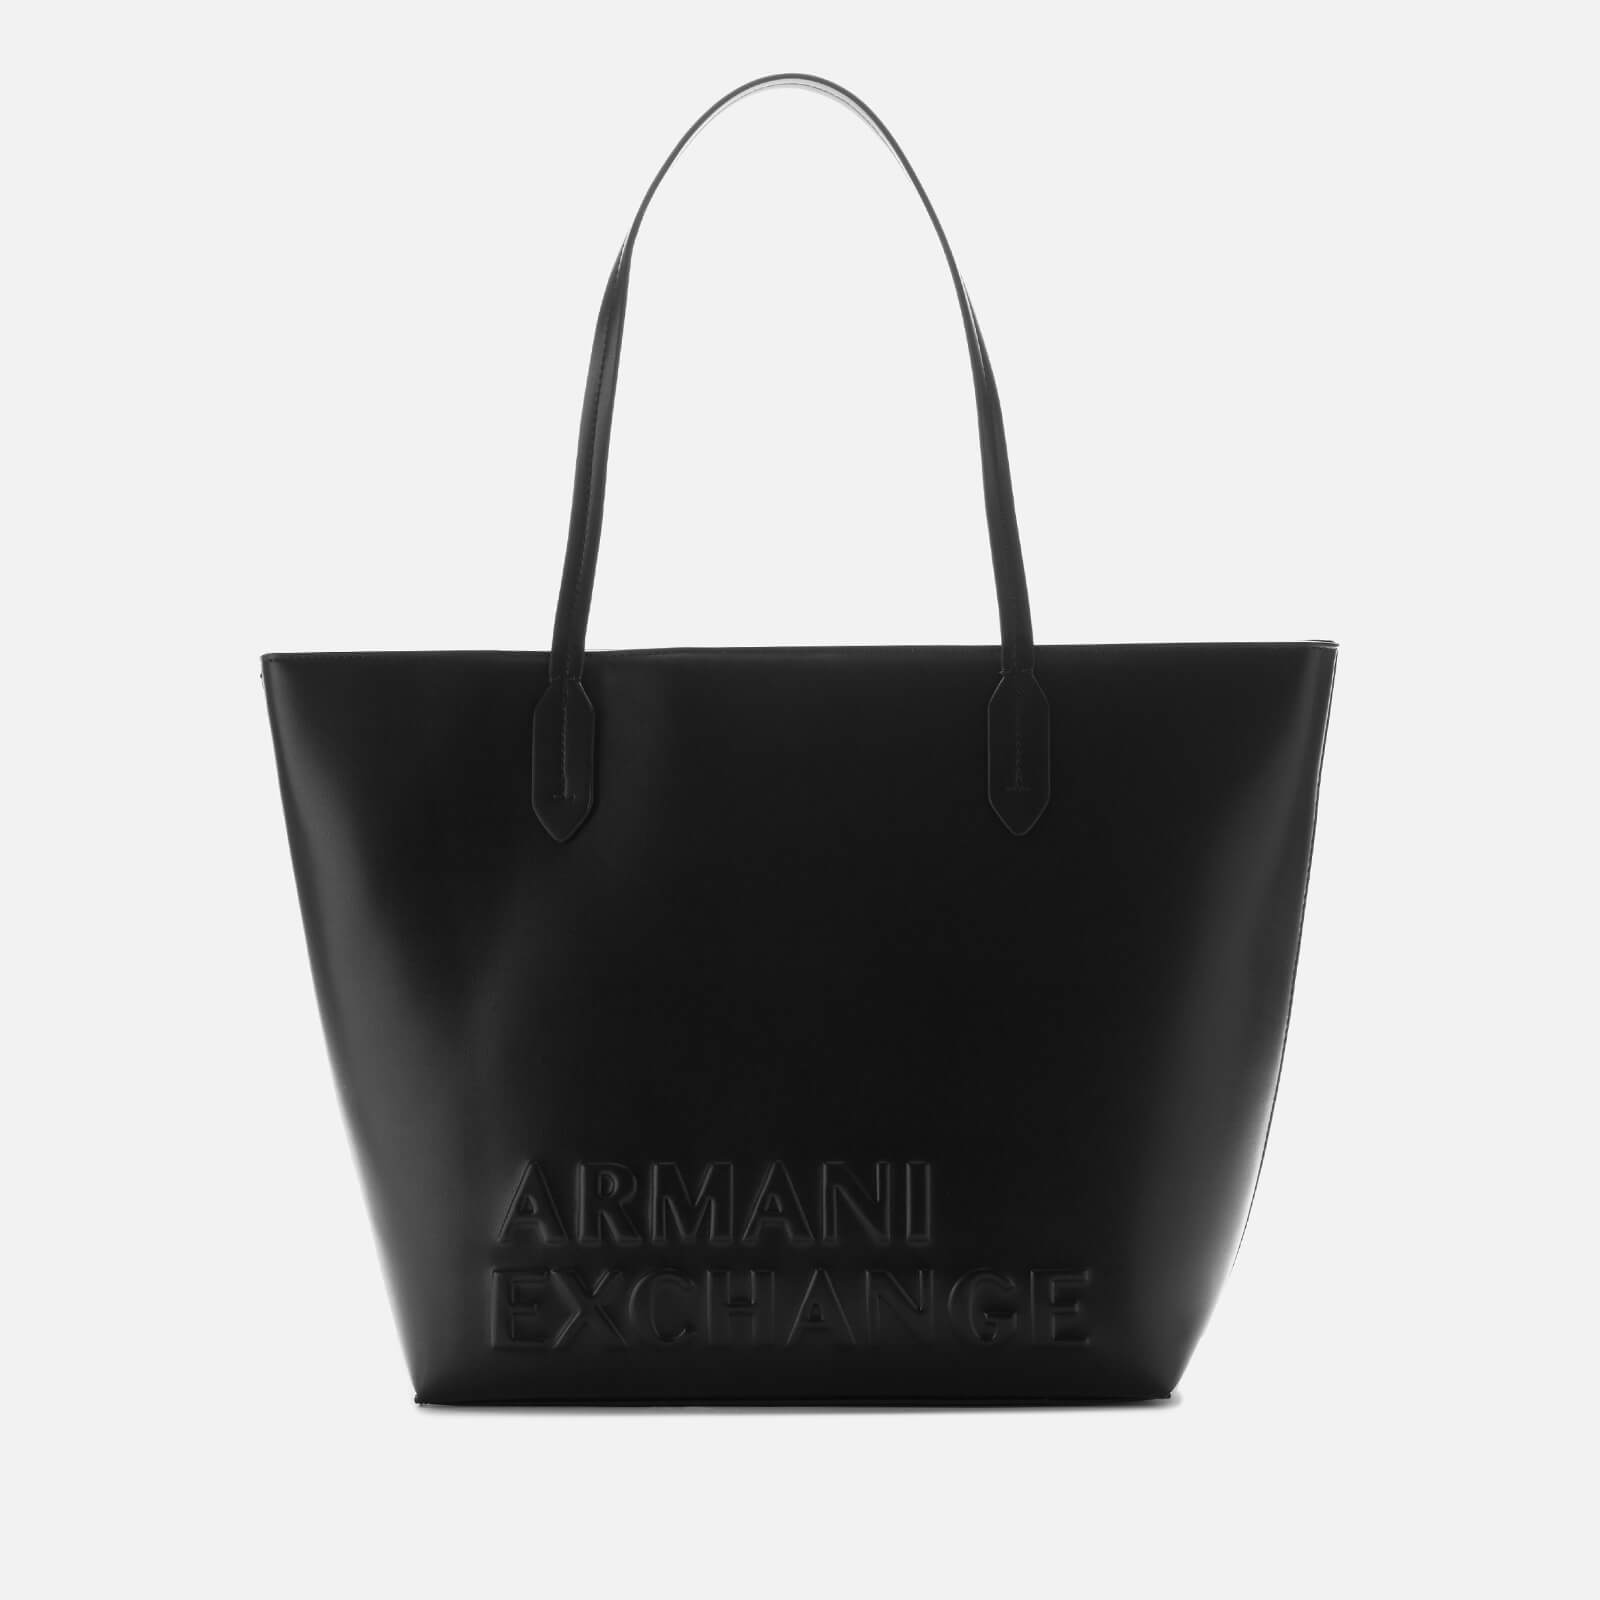 armani exchange tote bag